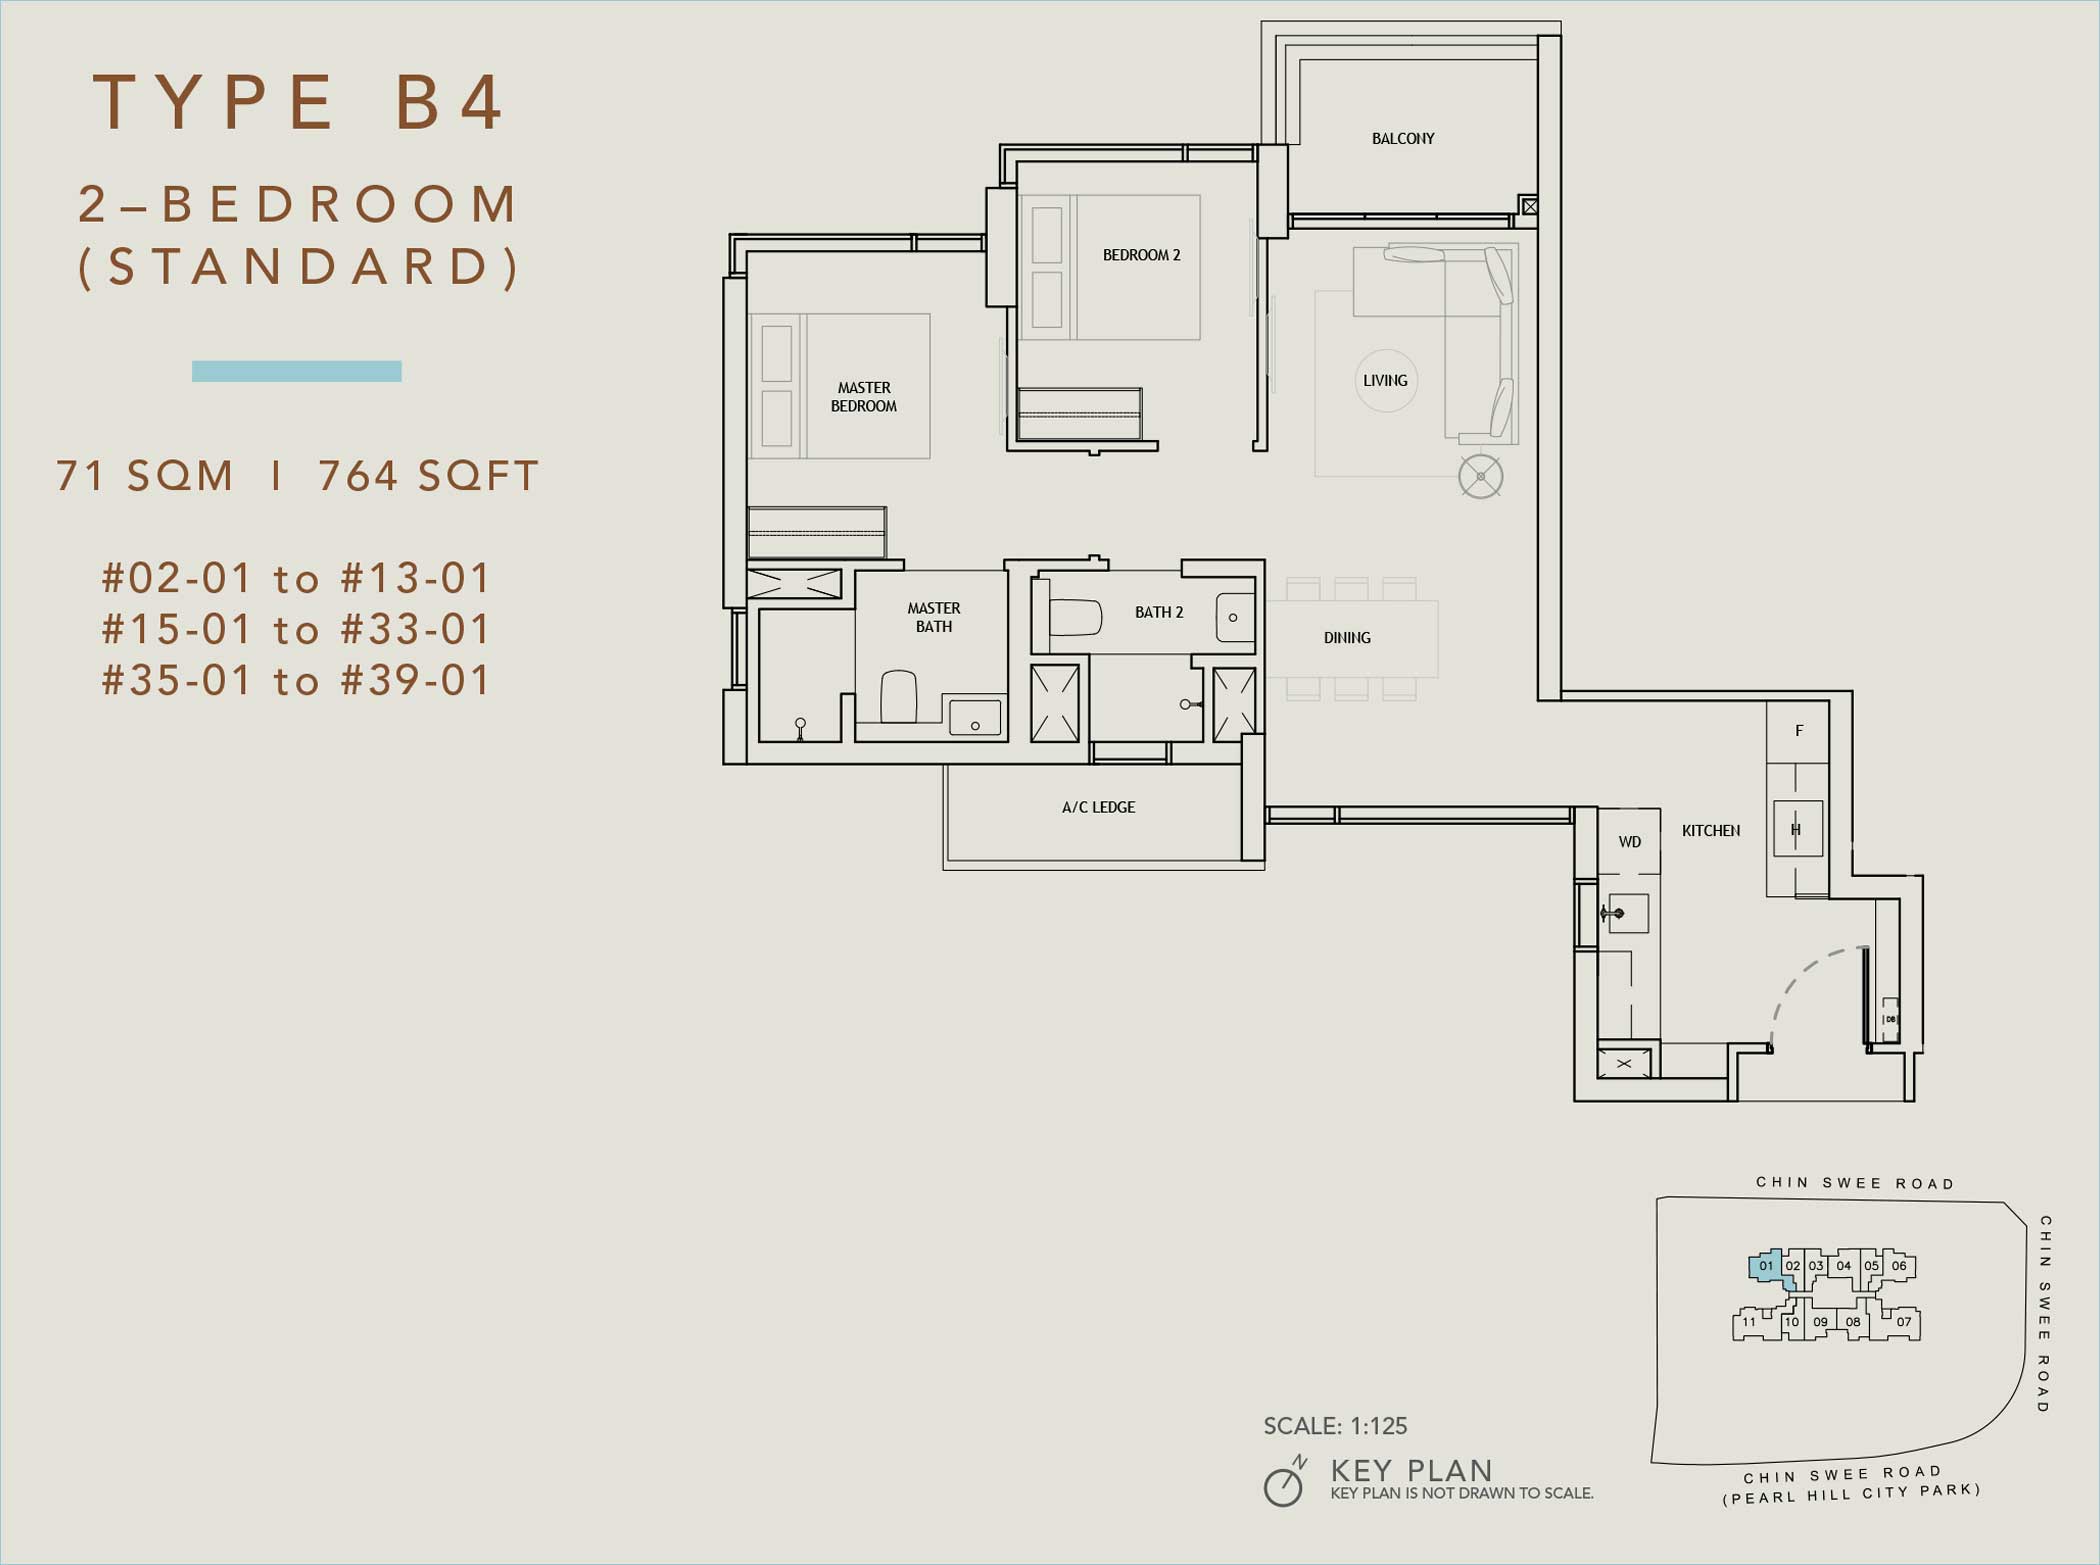 The Landmark 2-Bedroom Floor Plan (Type B4)